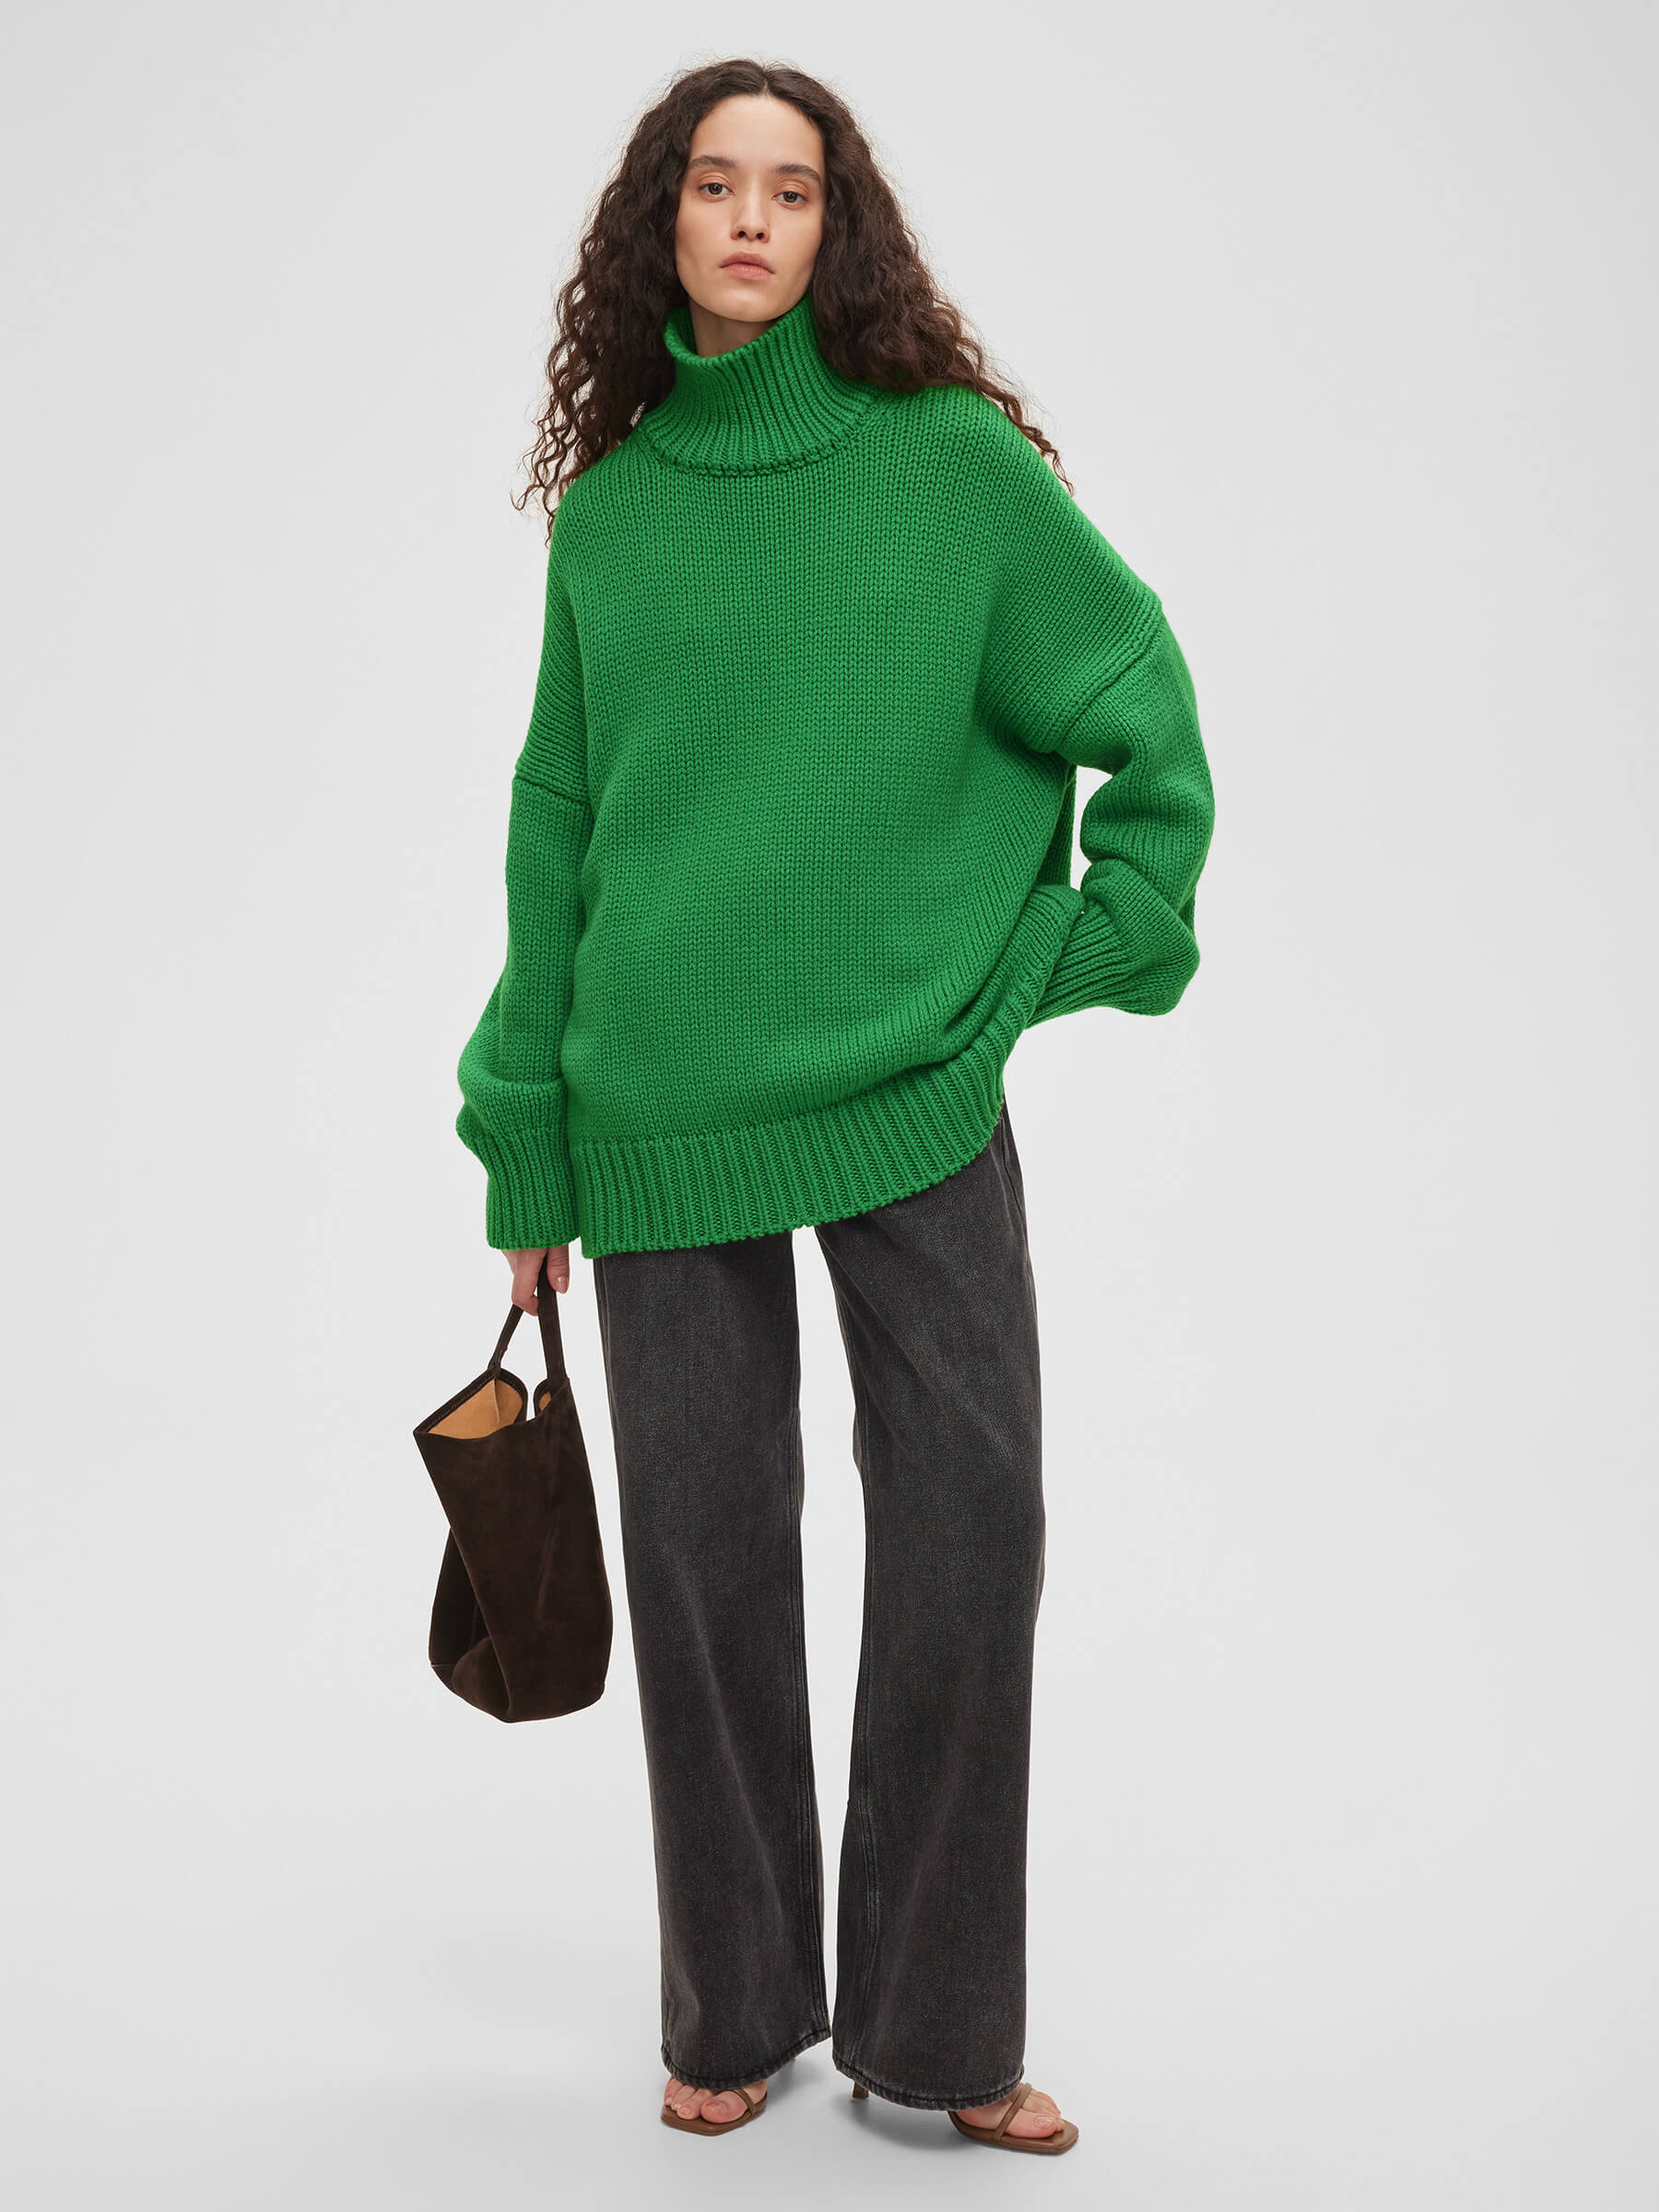 Свитер женский крупной вязки из шерсти, цвет – зеленый свитер длинный рукав крупная вязка размер 40 42 зеленый